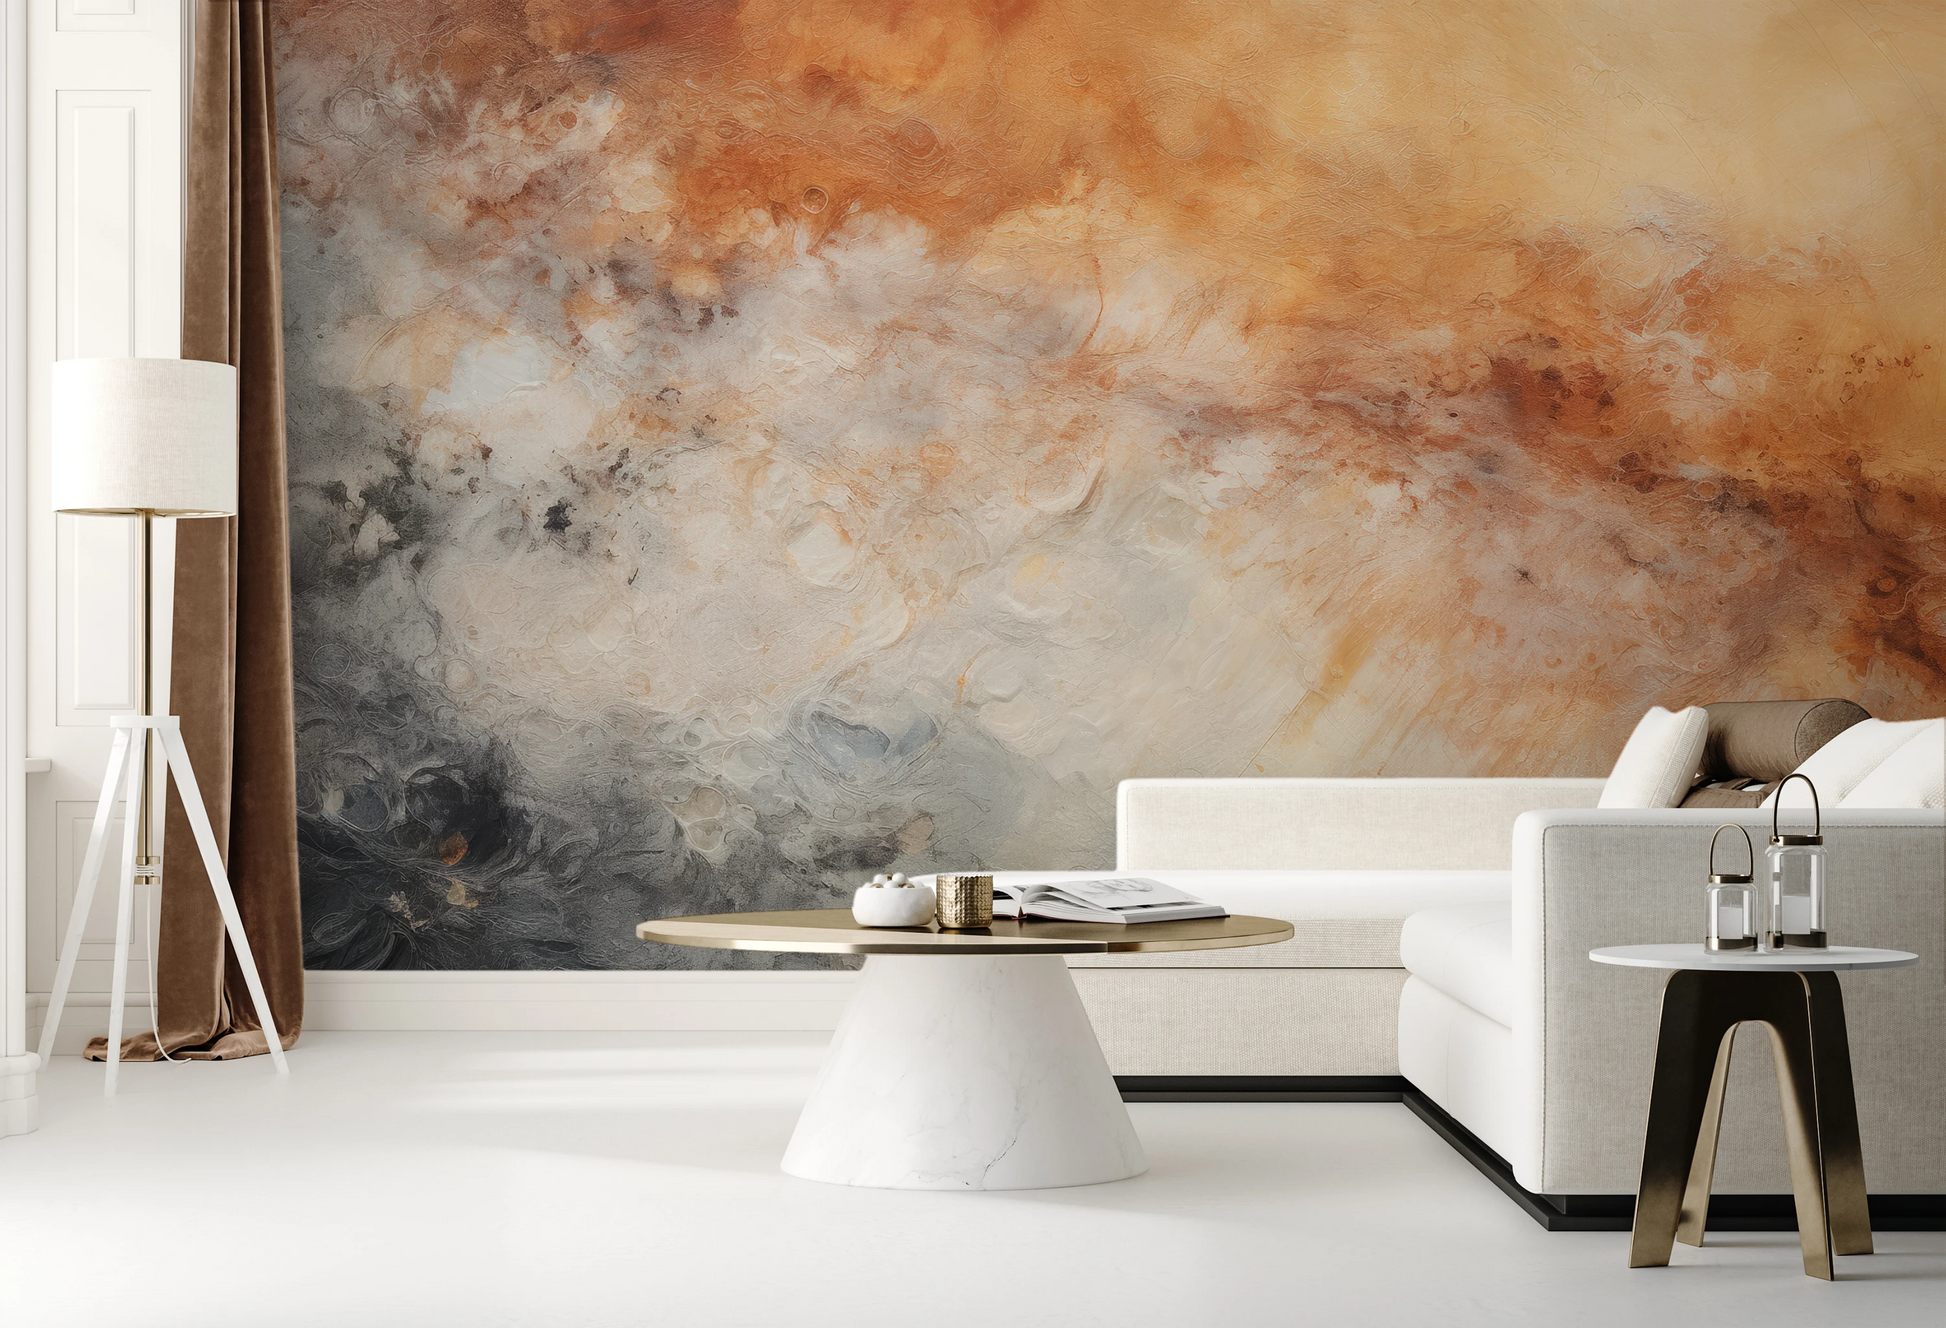 Fototapeta malowana o nazwie Jupiter's Canvas pokazana w aranżacji wnętrza.